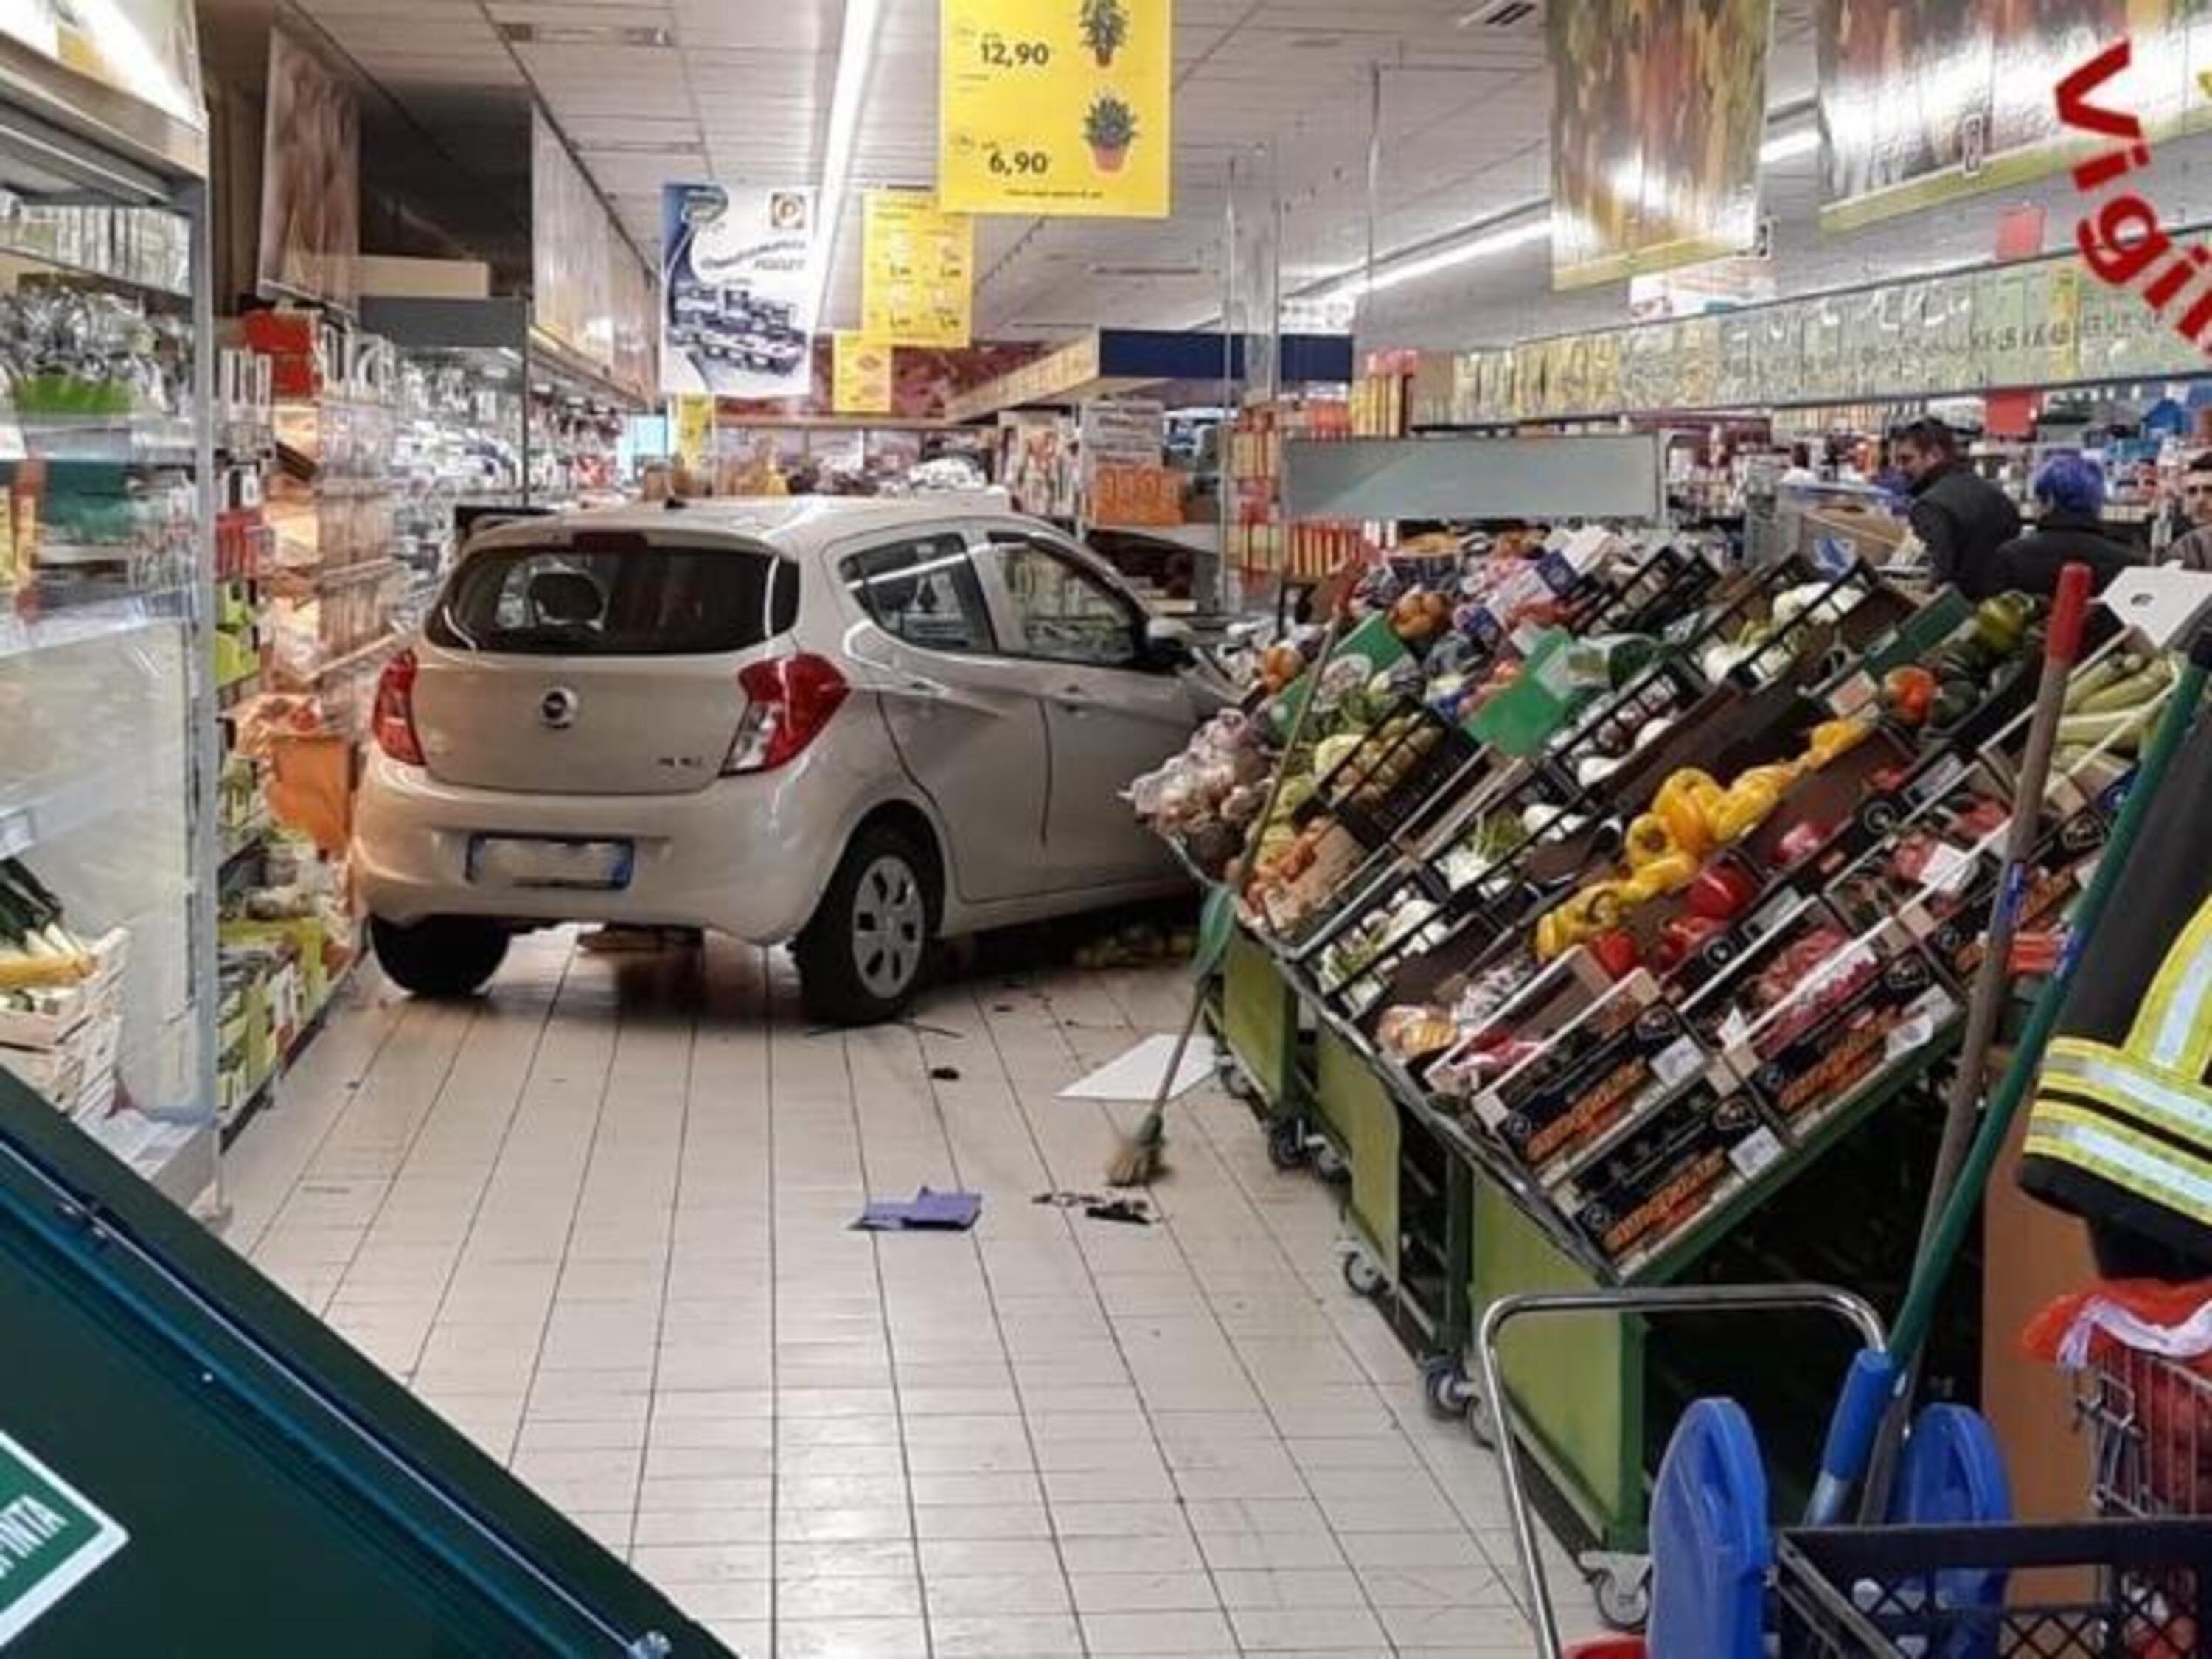 Di corsa al supermarket per la spesa, Auto sfonda tutto: banco frutta e verdura demolito [supermarket crash]